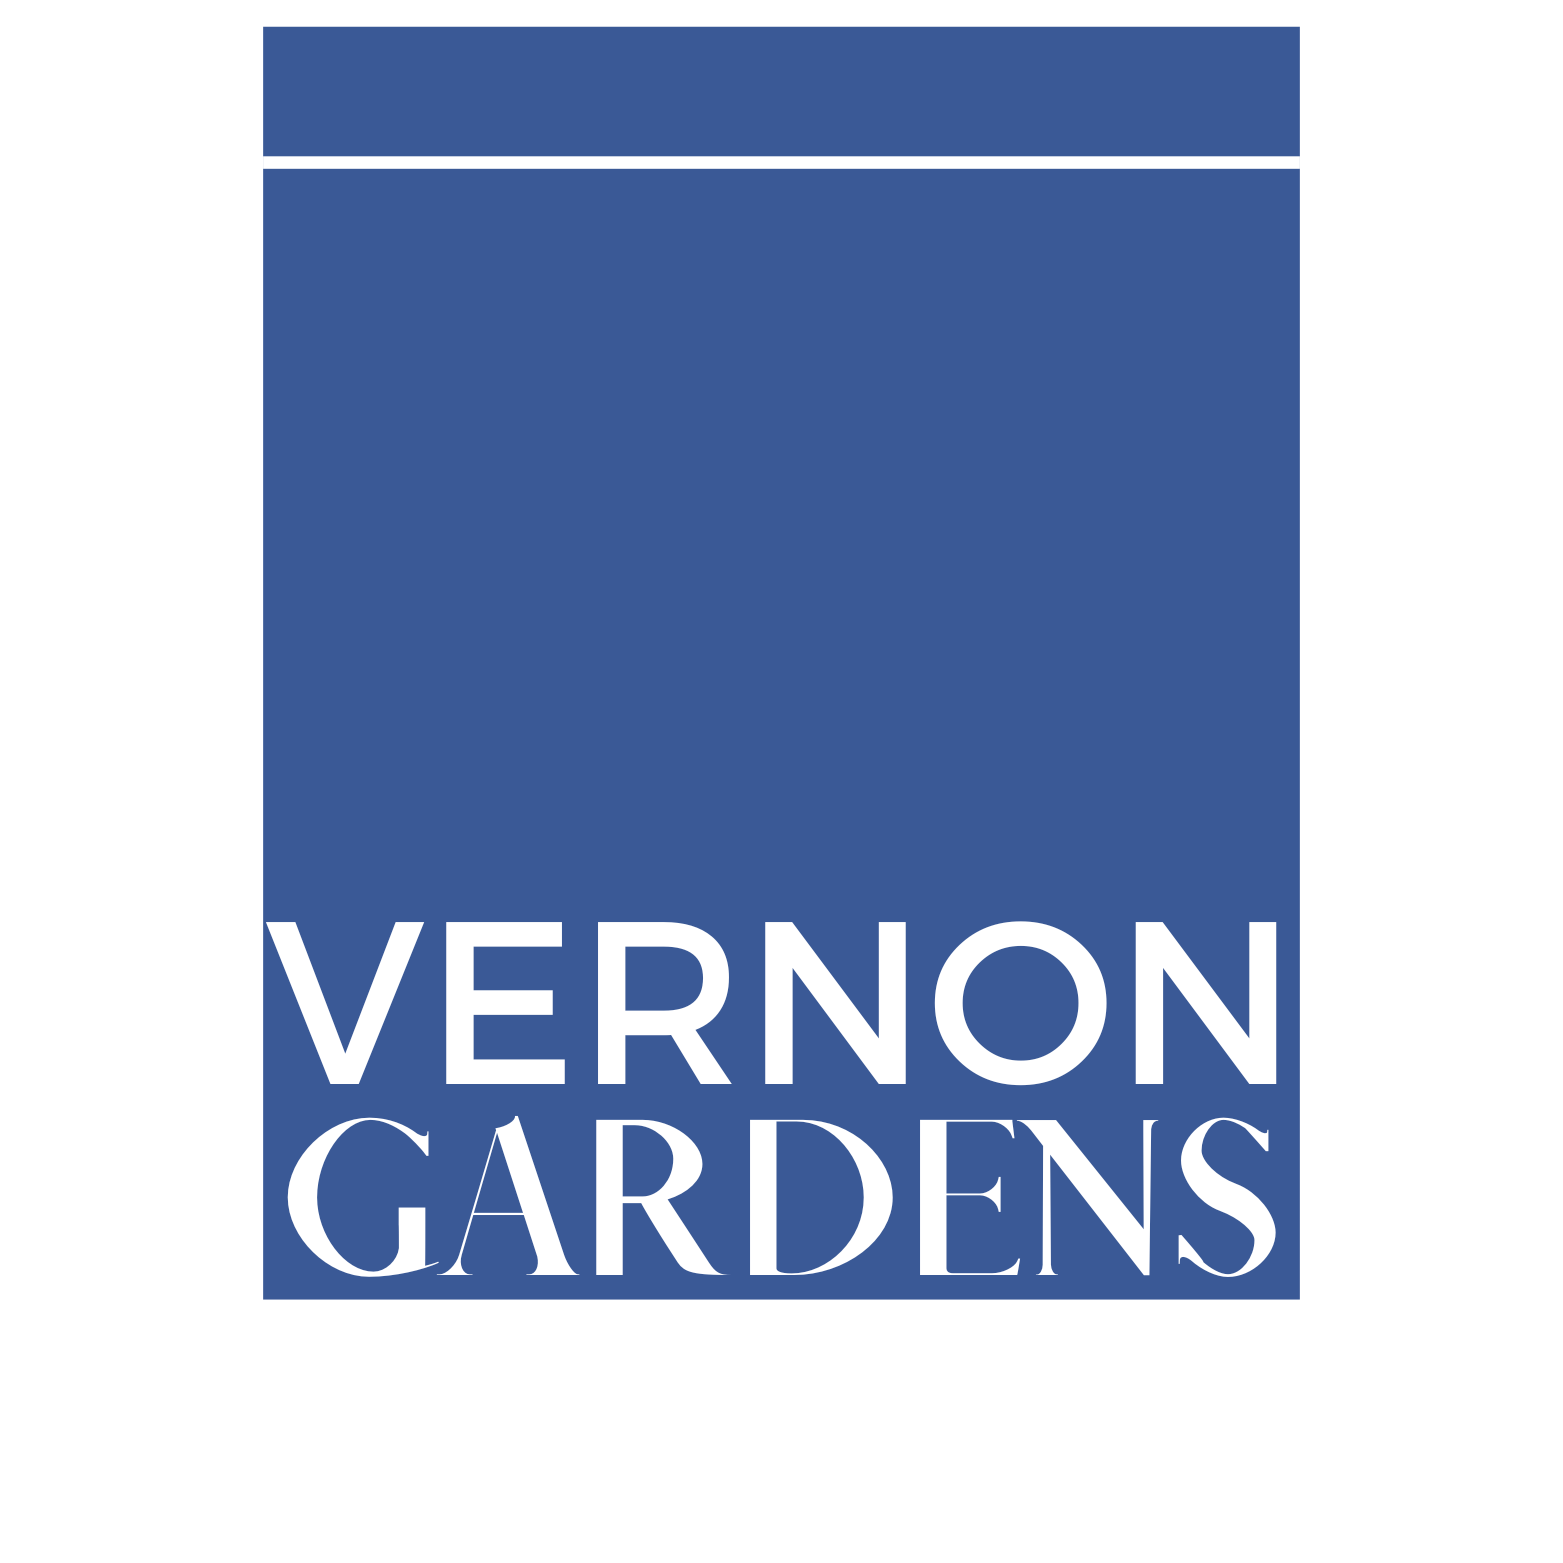 Vernon Gardens